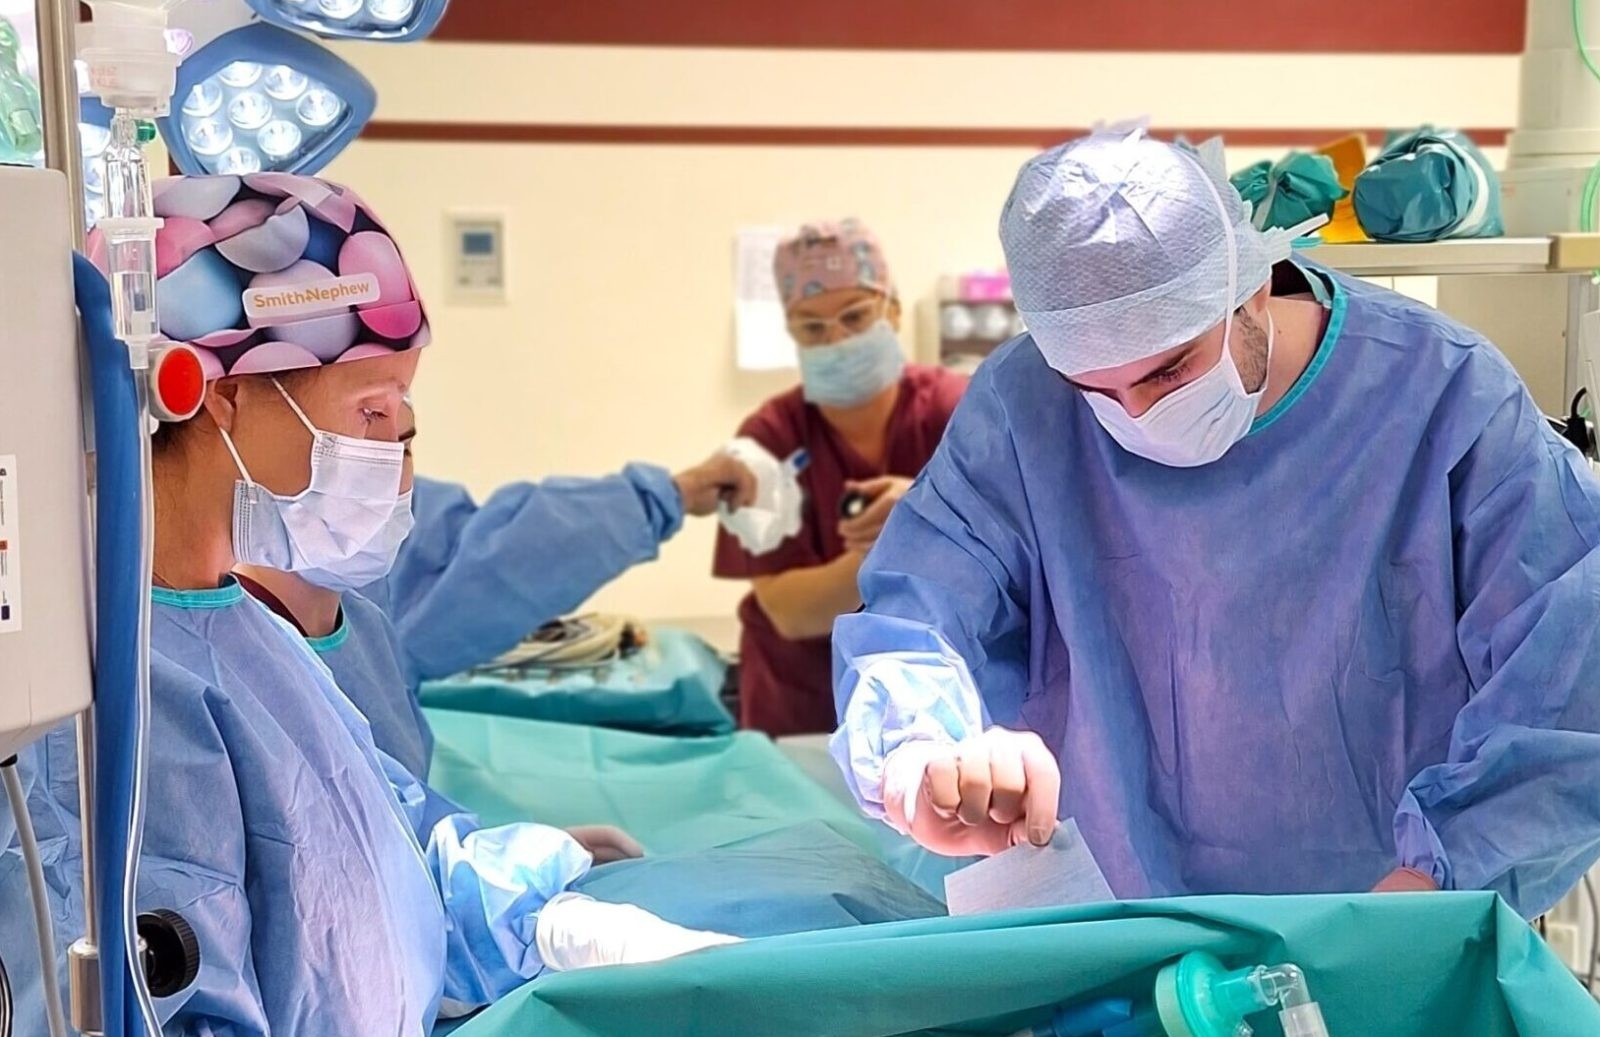 Chirurdzy z Krakowa podczas operacji /Fot. UJ
